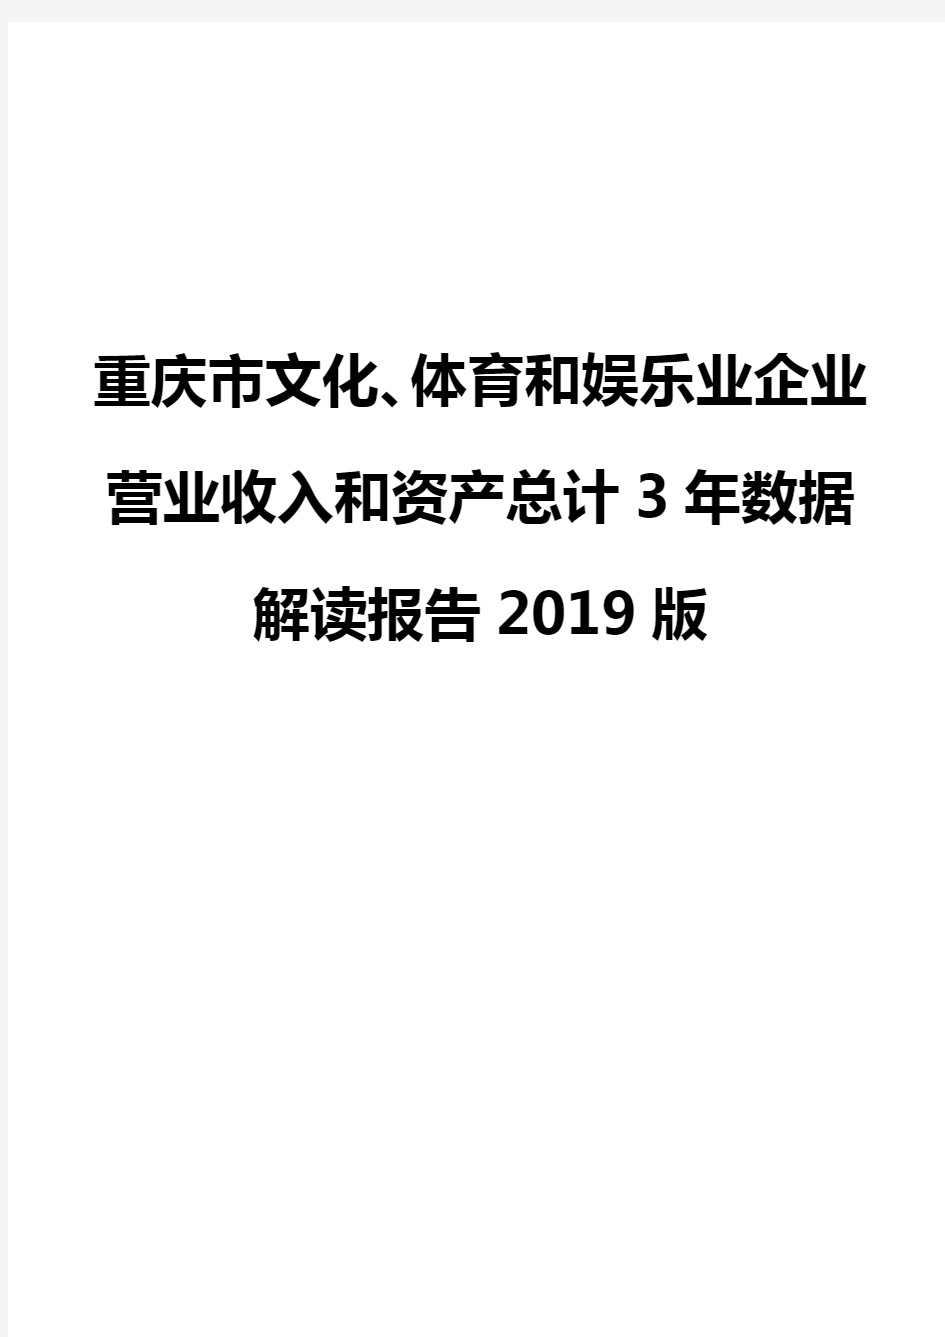 重庆市文化、体育和娱乐业企业营业收入和资产总计3年数据解读报告2019版